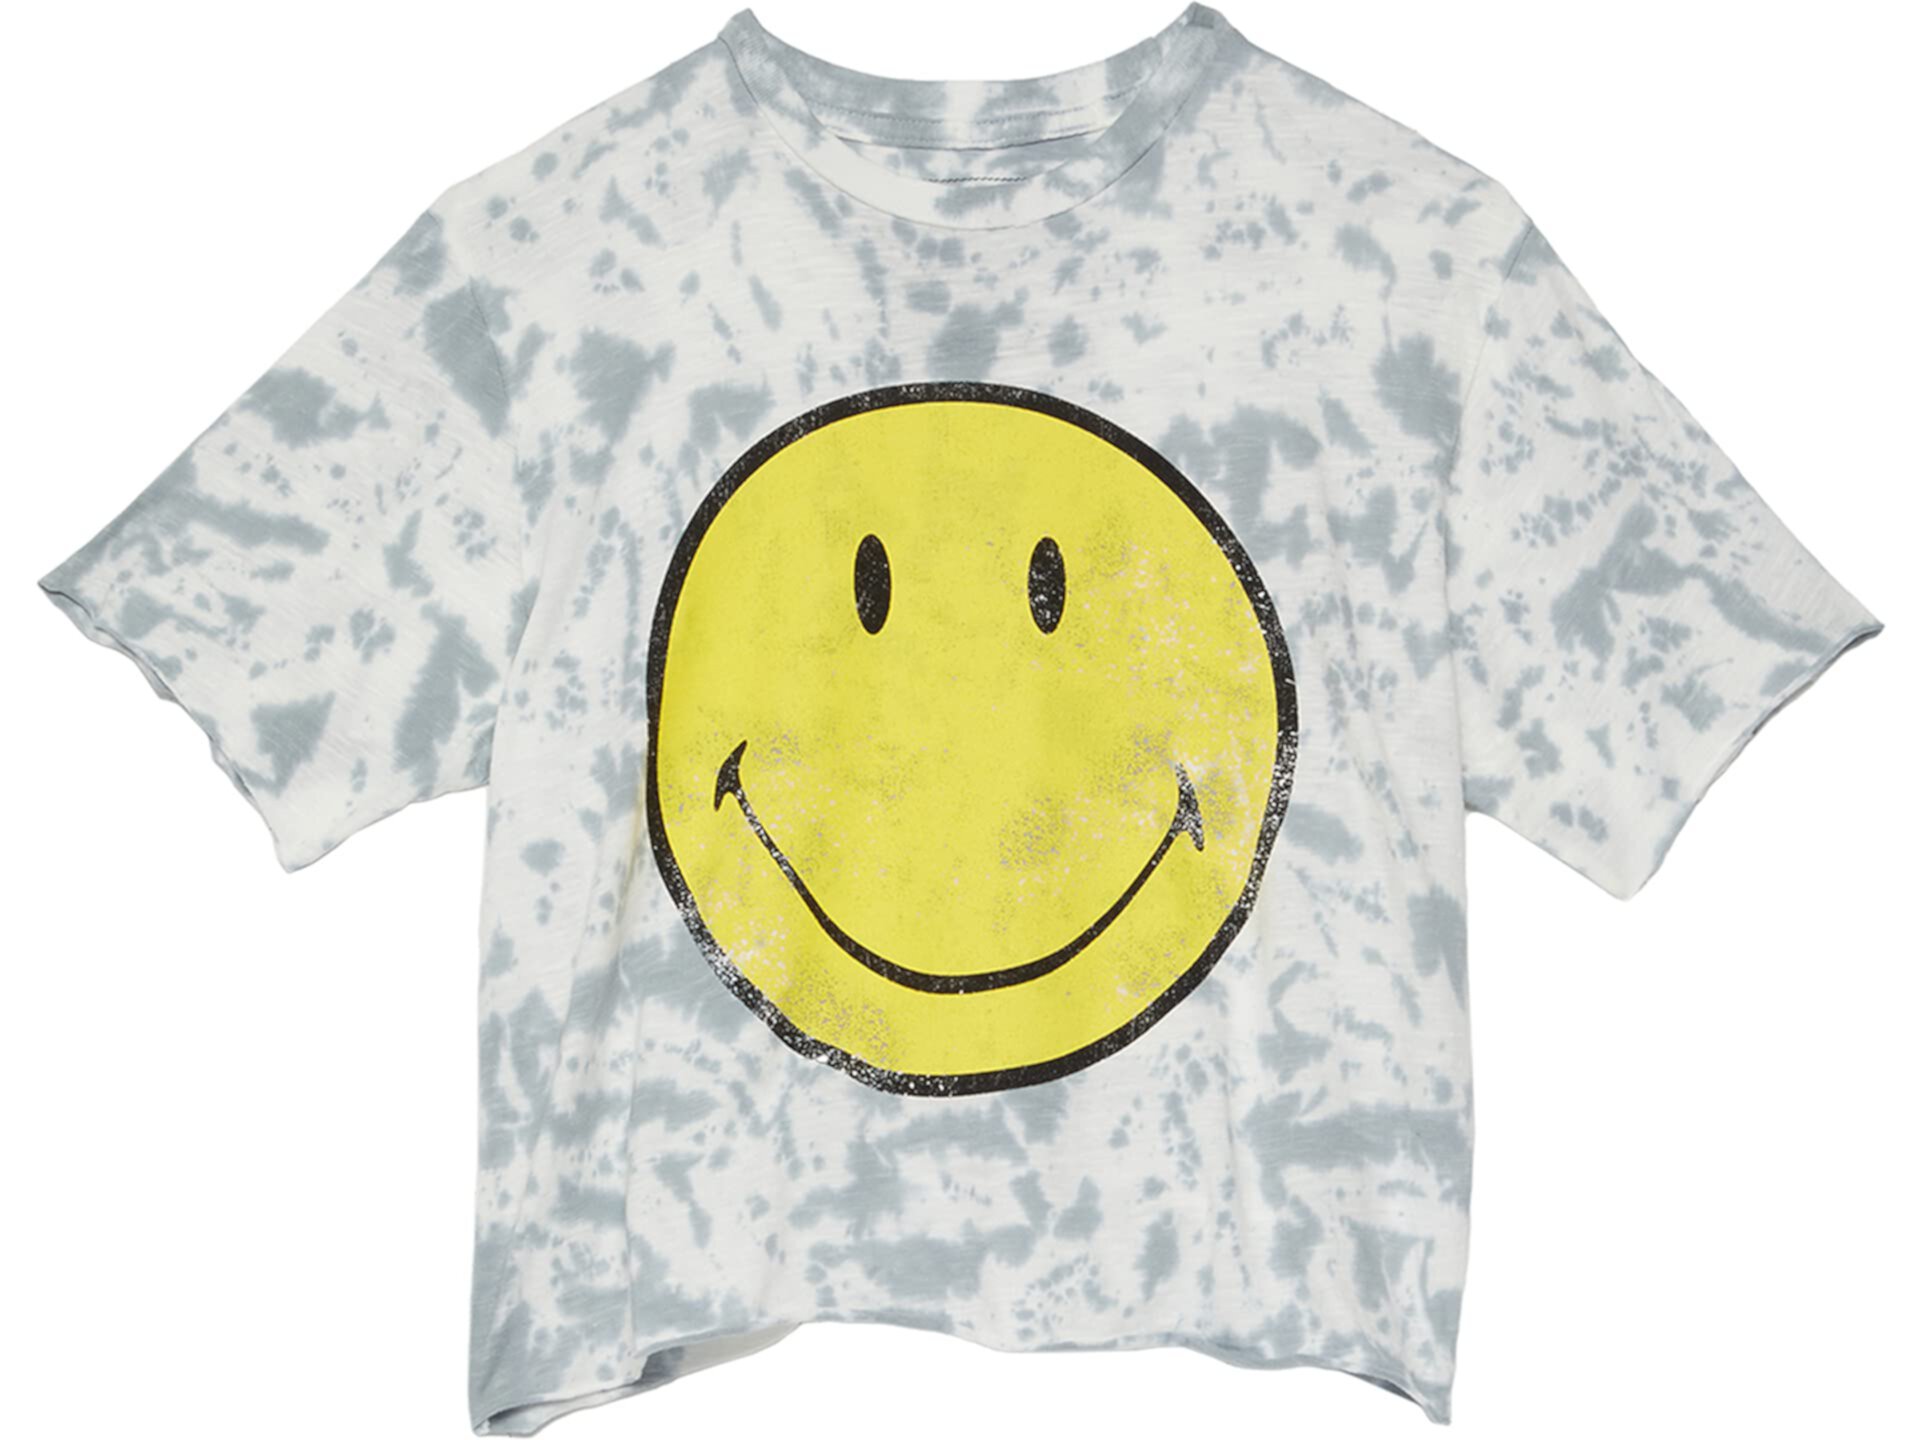 Укороченная футболка Smiley с принтом тай-дай (Big Kids) The Original Retro Brand Kids